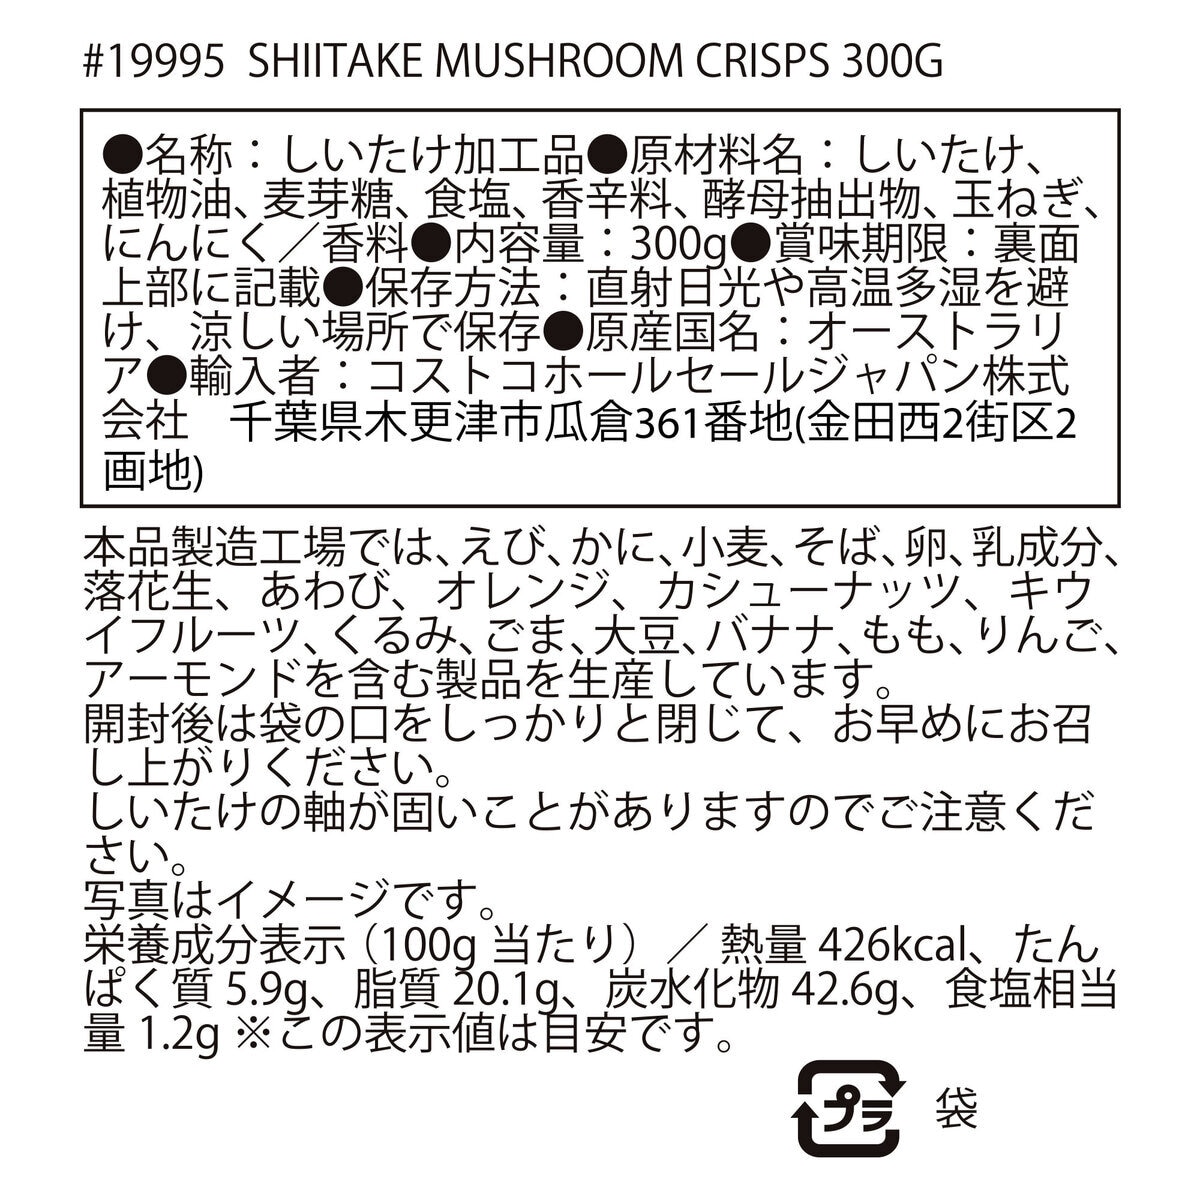 Costco　300g　DJA　シイタケマッシュルームクリスプ　Japan